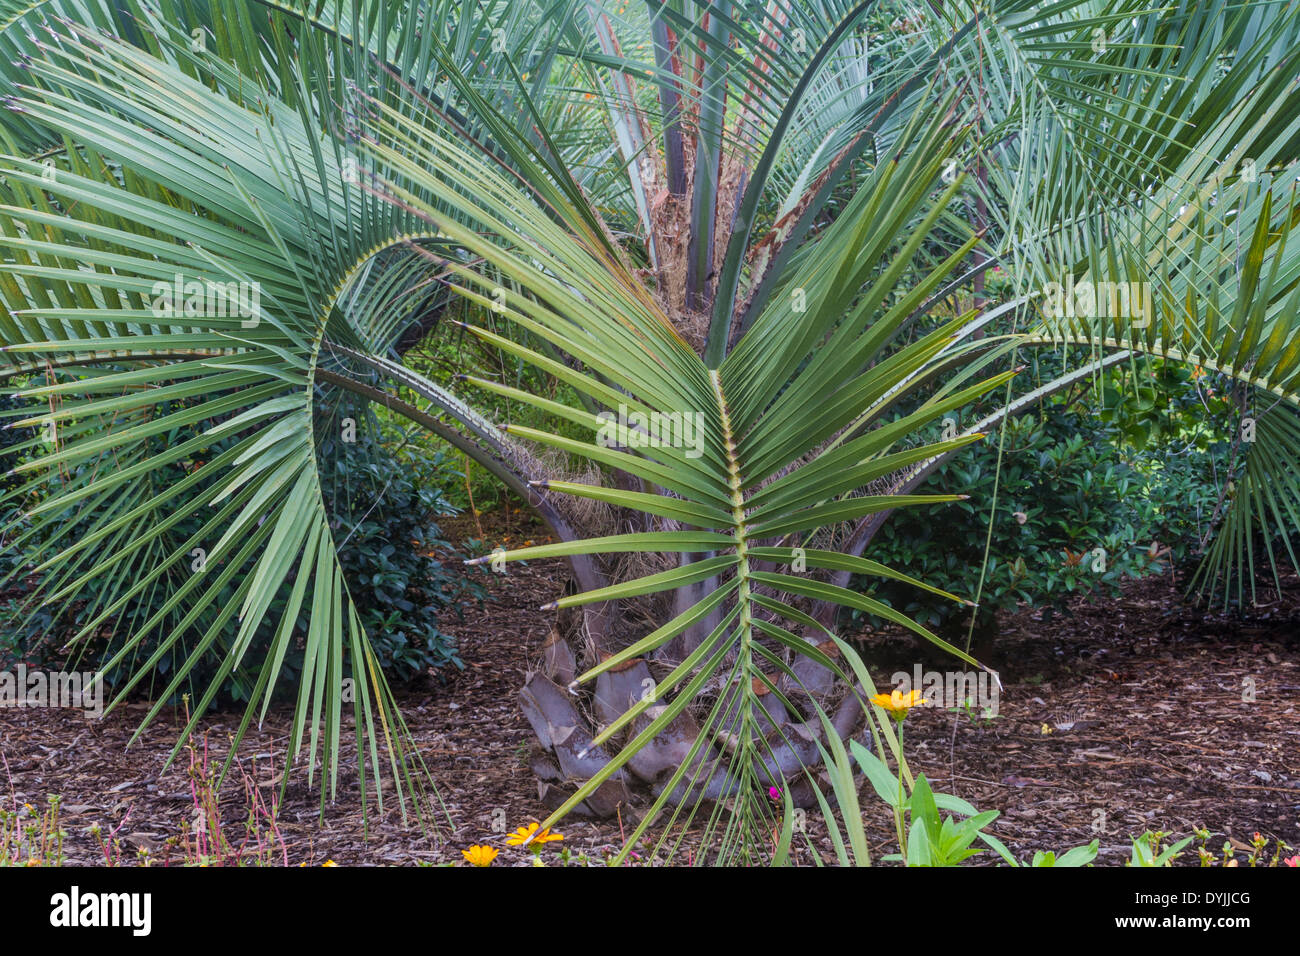 Sabal Palm trees summer garden scene at Mercer Botanical Gardens in Spring, Texas. Stock Photo